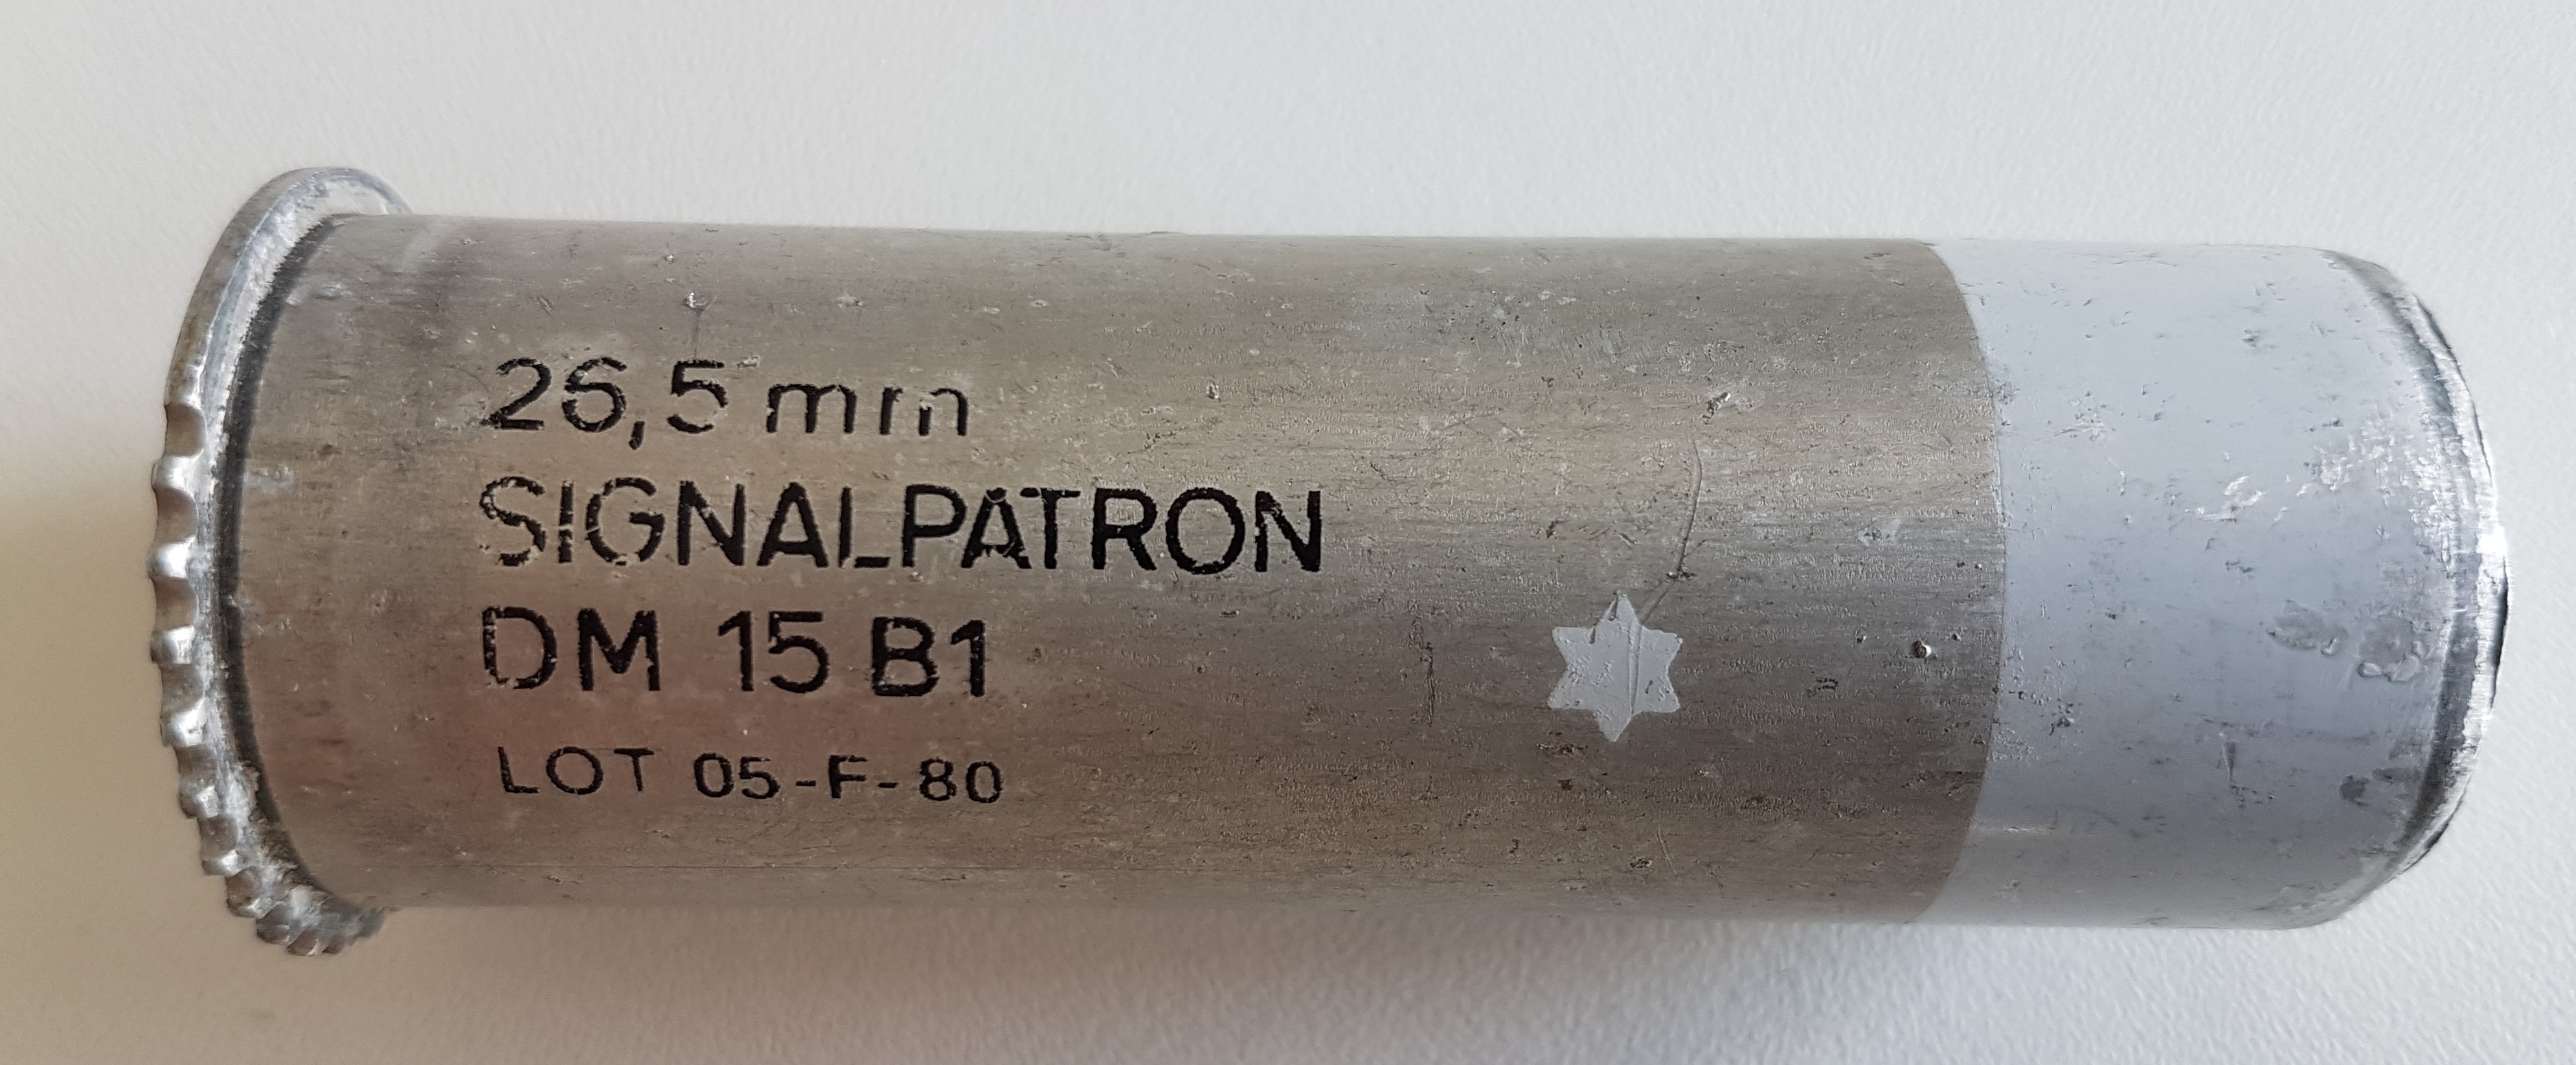 ./ammo/265Signal/patroner/Patron-265-DM-Signal-Hvit-DM15B1-LOT-05-F-80-1.jpg